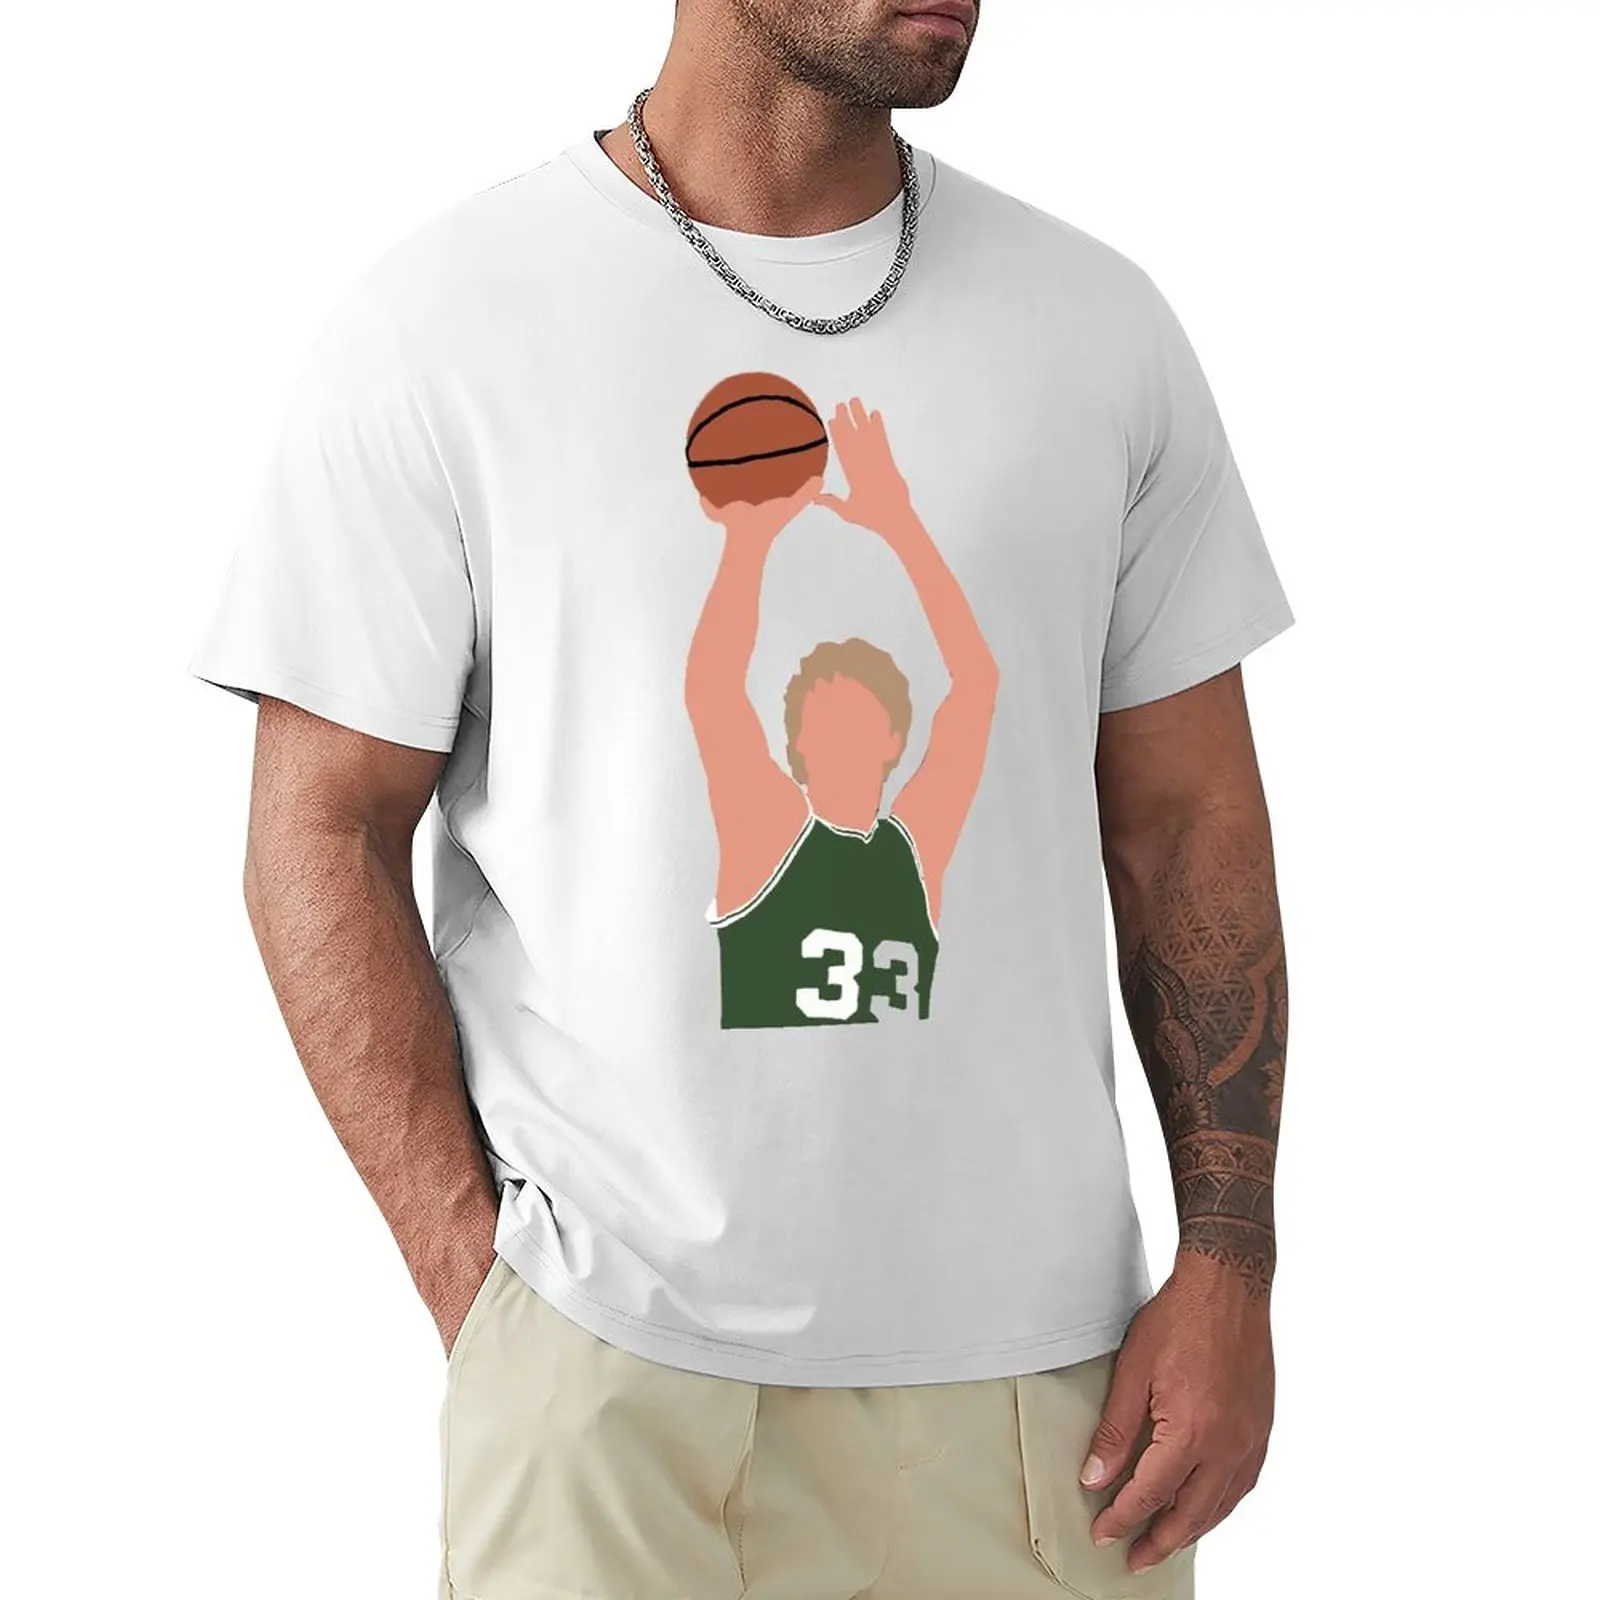 

Larryss и Birdss 2023 баскетбольные звезды (5) футболки для футбольной команды, новинка, Kemp, фитнес, высокое качество, круглый вырез, европейский размер